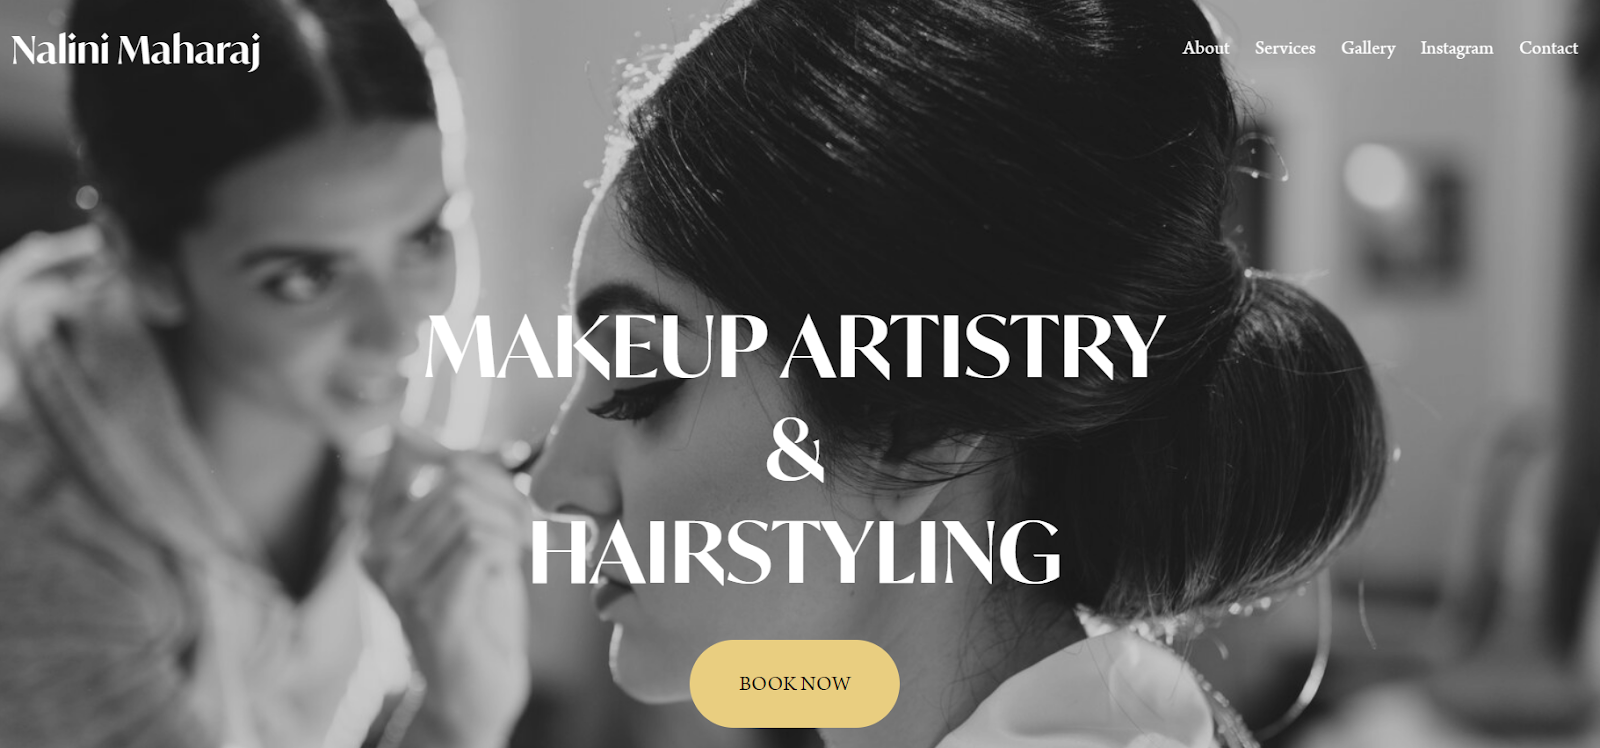 makeup artist website, Nalini Maharaj